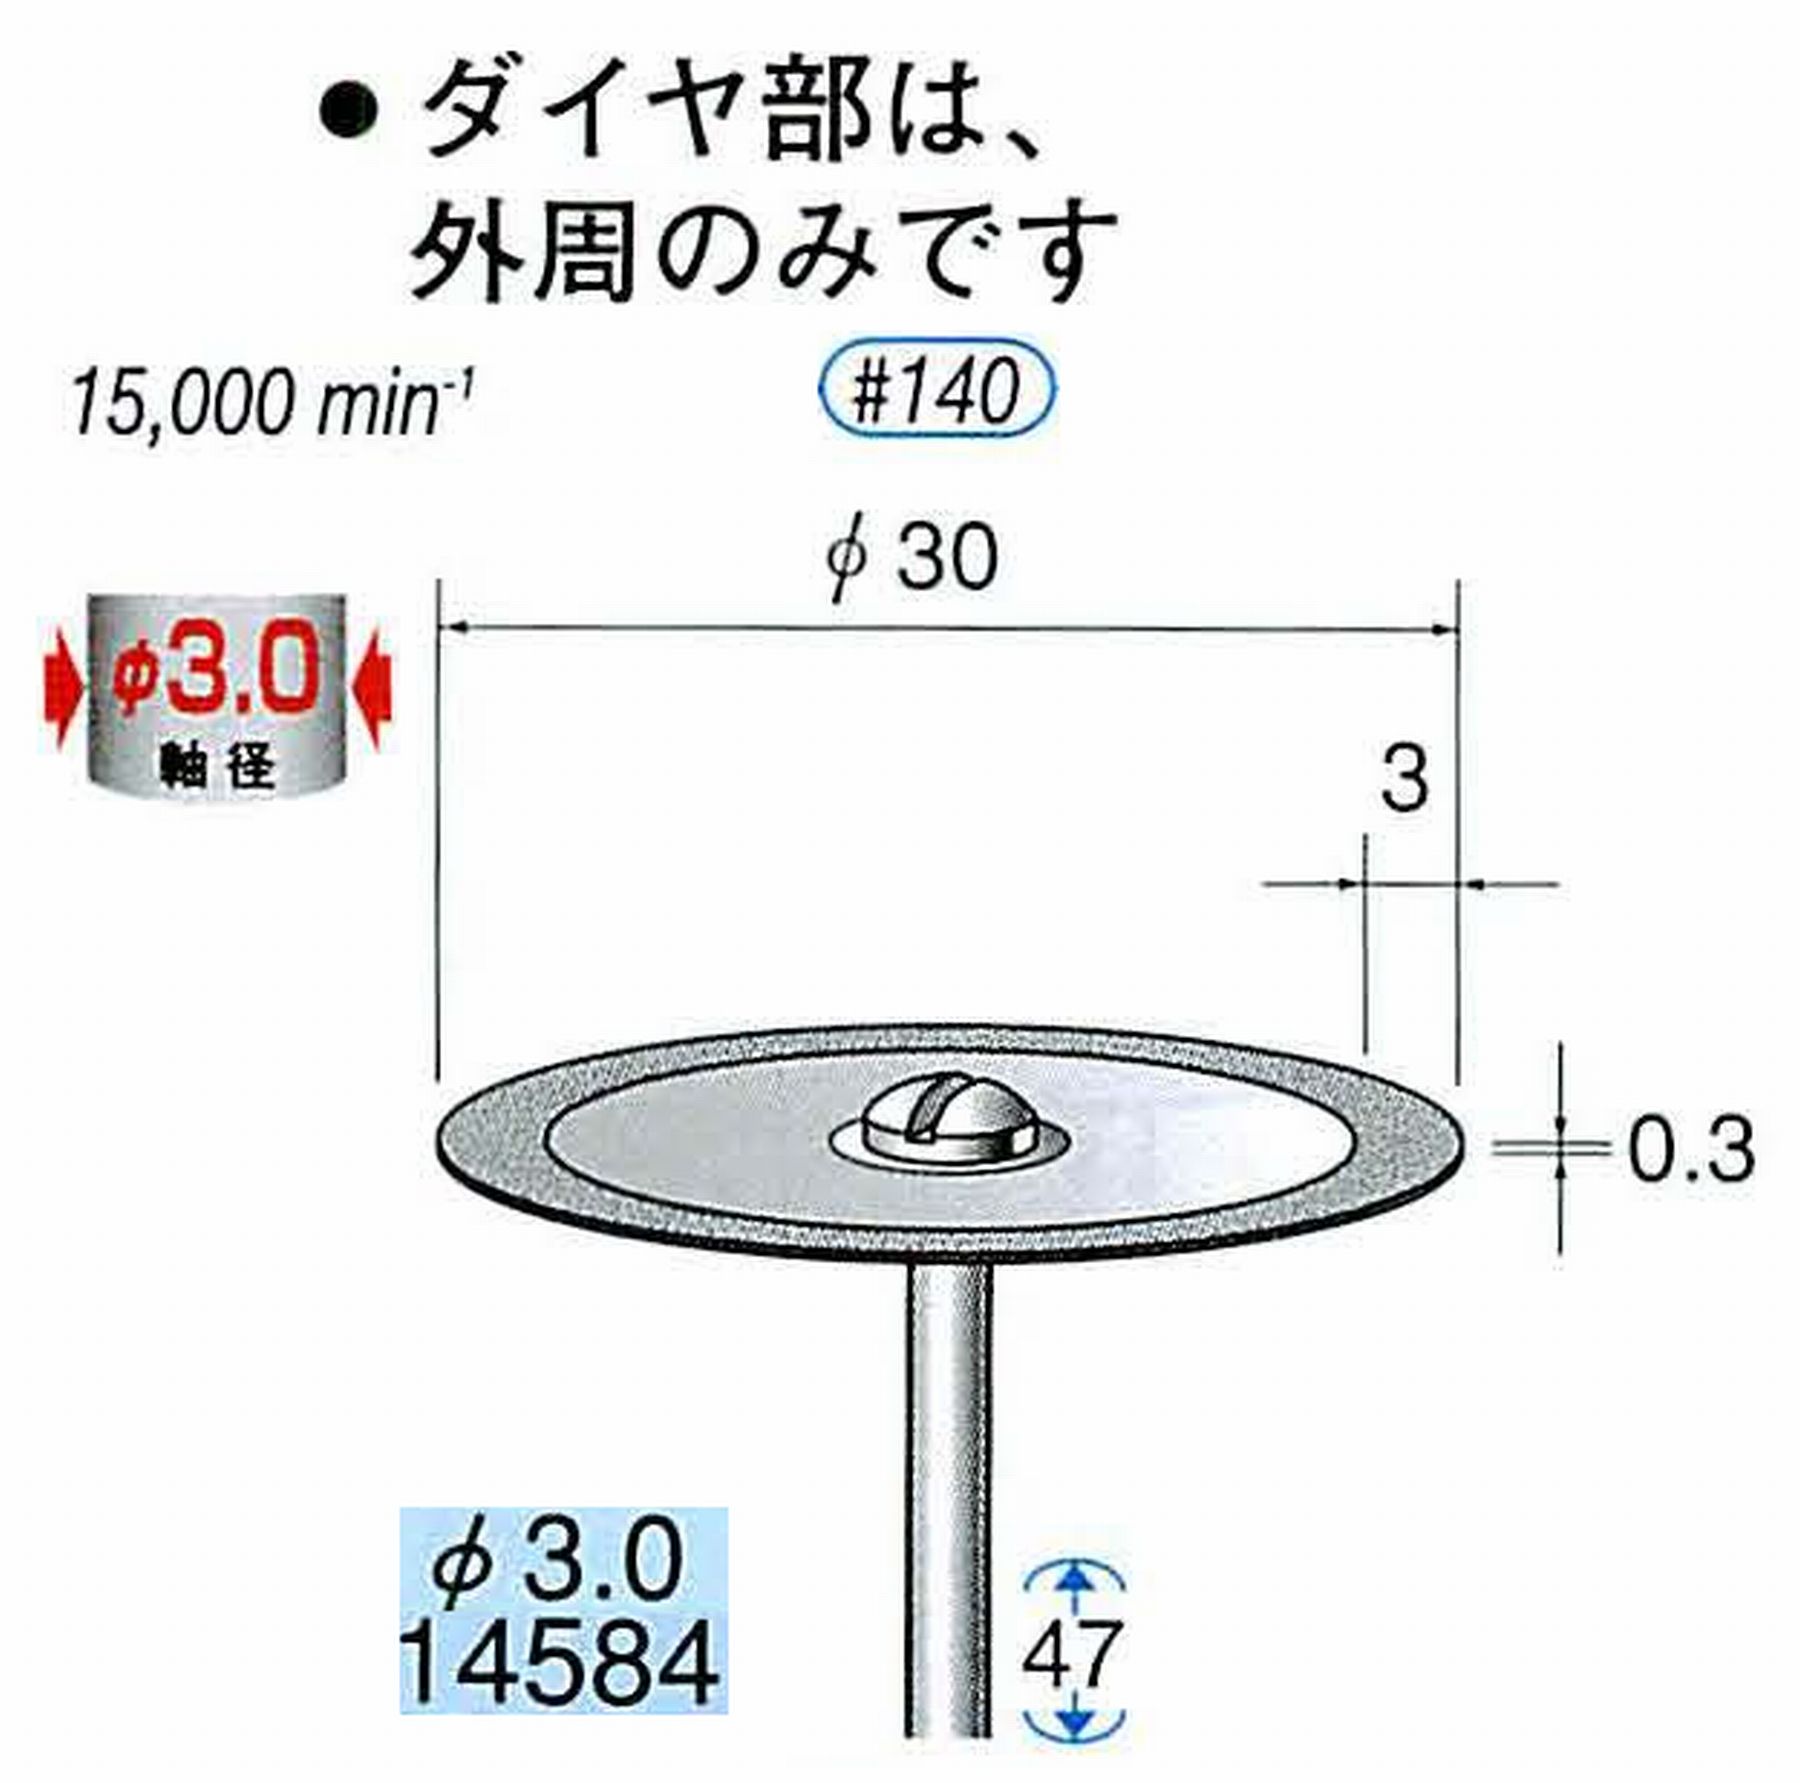 ナカニシ/NAKANISHI ダイヤモンドカッティングディスク メタルボンドタイプ 軸径(シャンク)φ3.0mm 14584